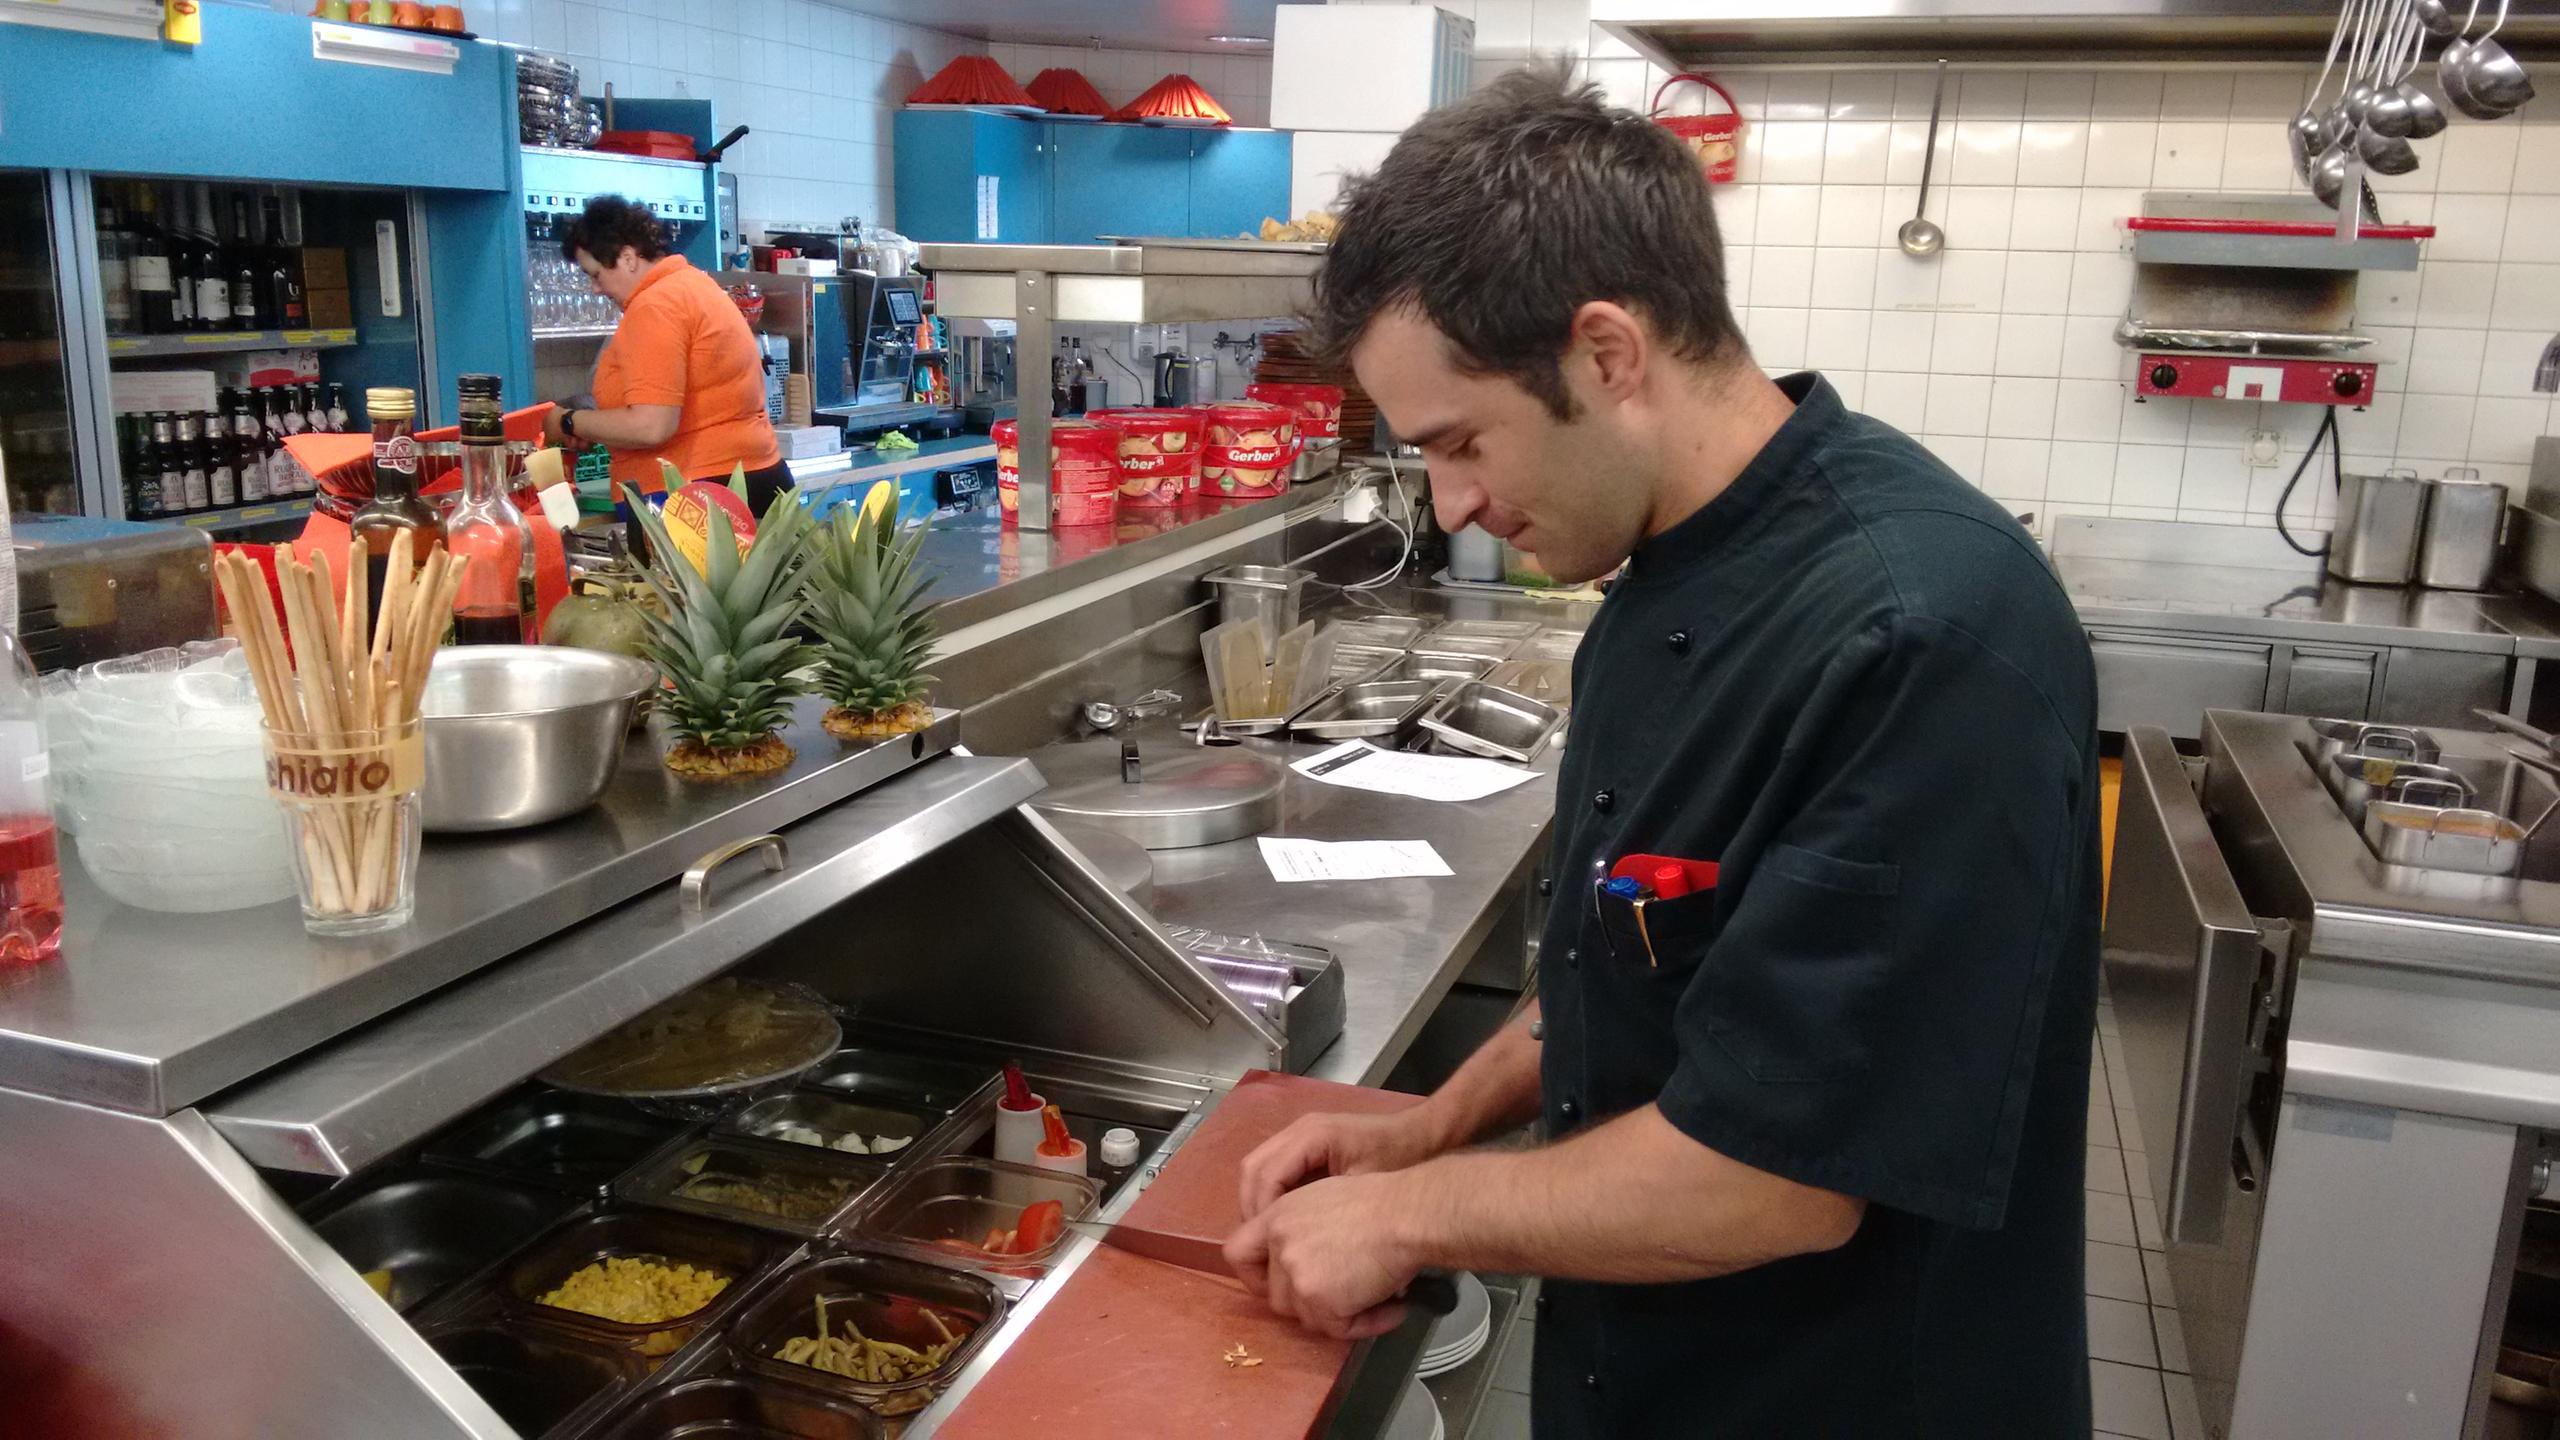 José cortando legumes no restaurante.